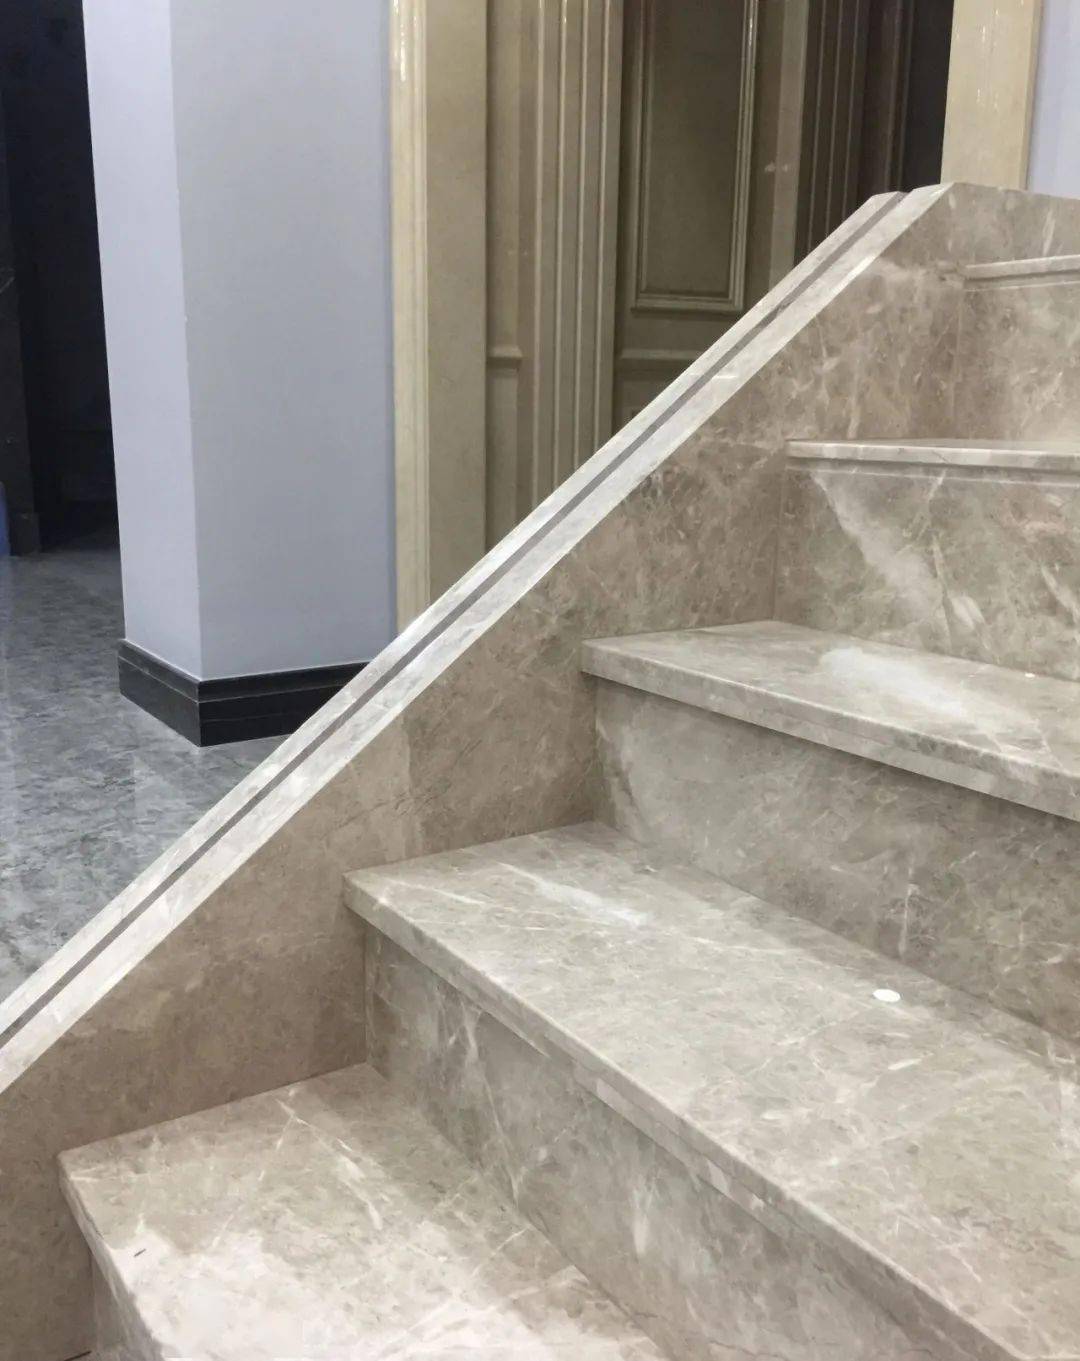 楼梯用石材来做时需要注意哪些细节呢?